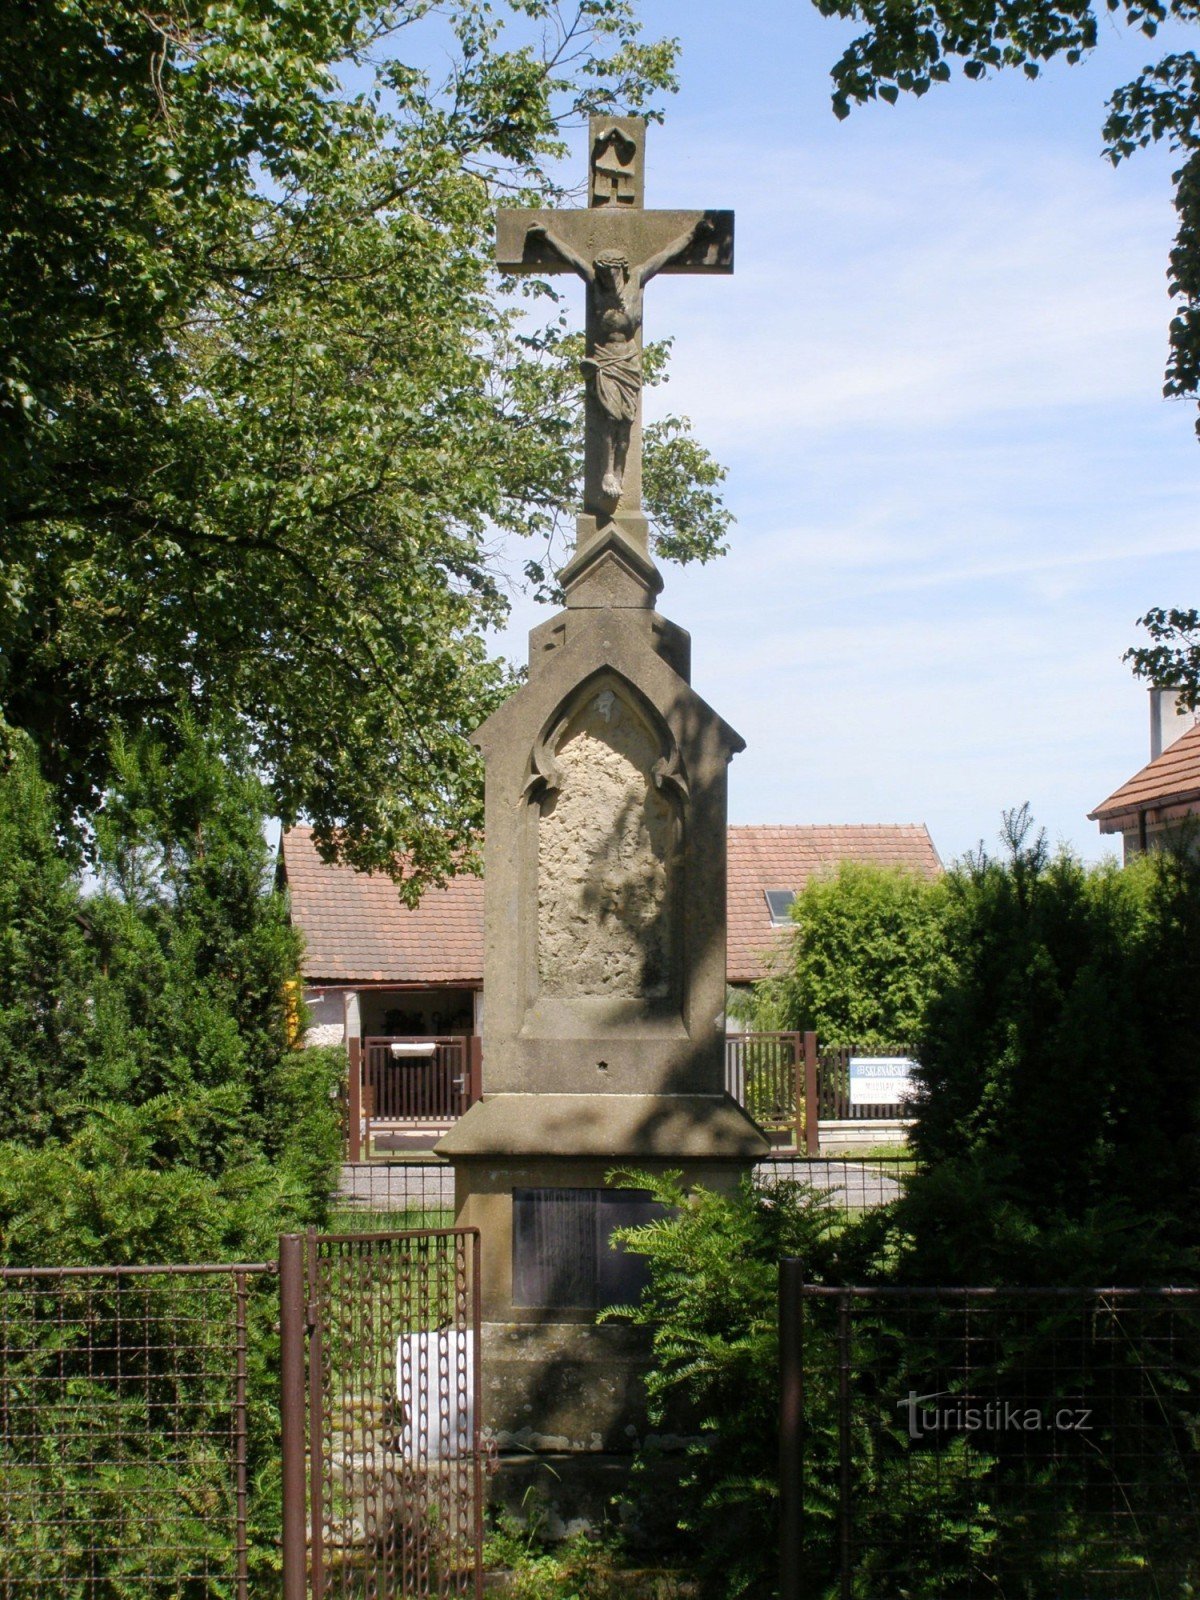 Chmelovice - joukko monumentteja